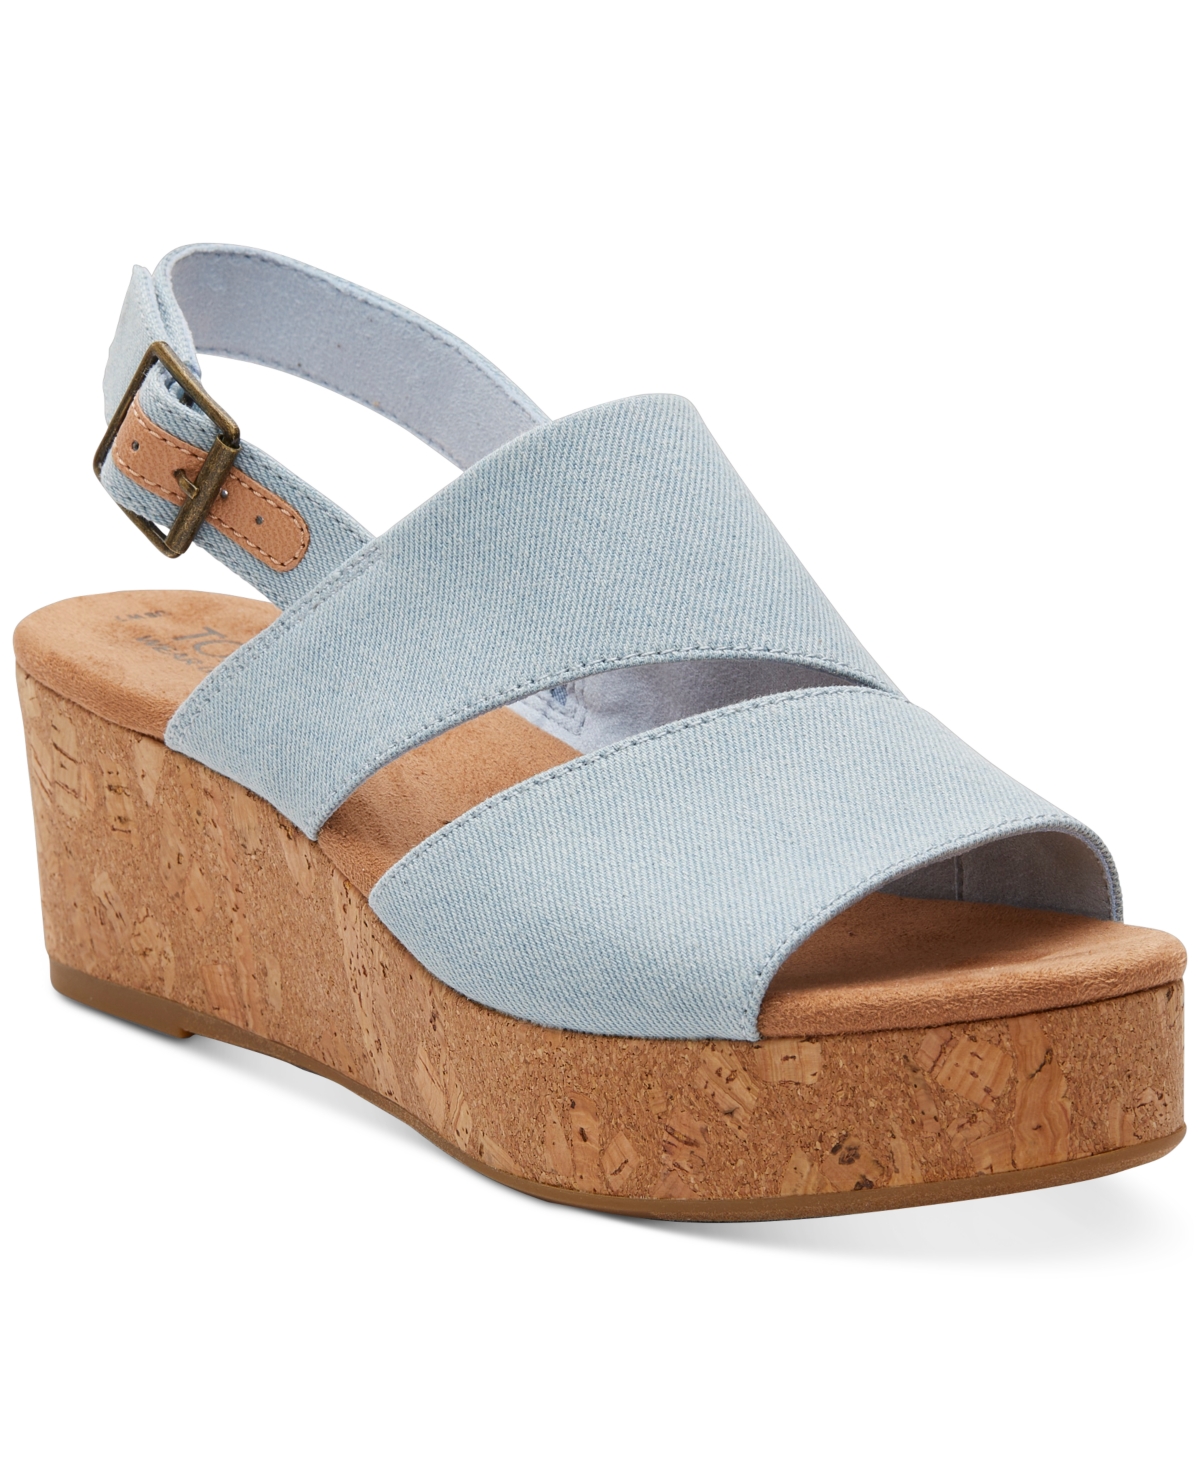 Women's Claudine Slingback Cork Wedge Platform Sandals - Pastel Blue Washed Denim